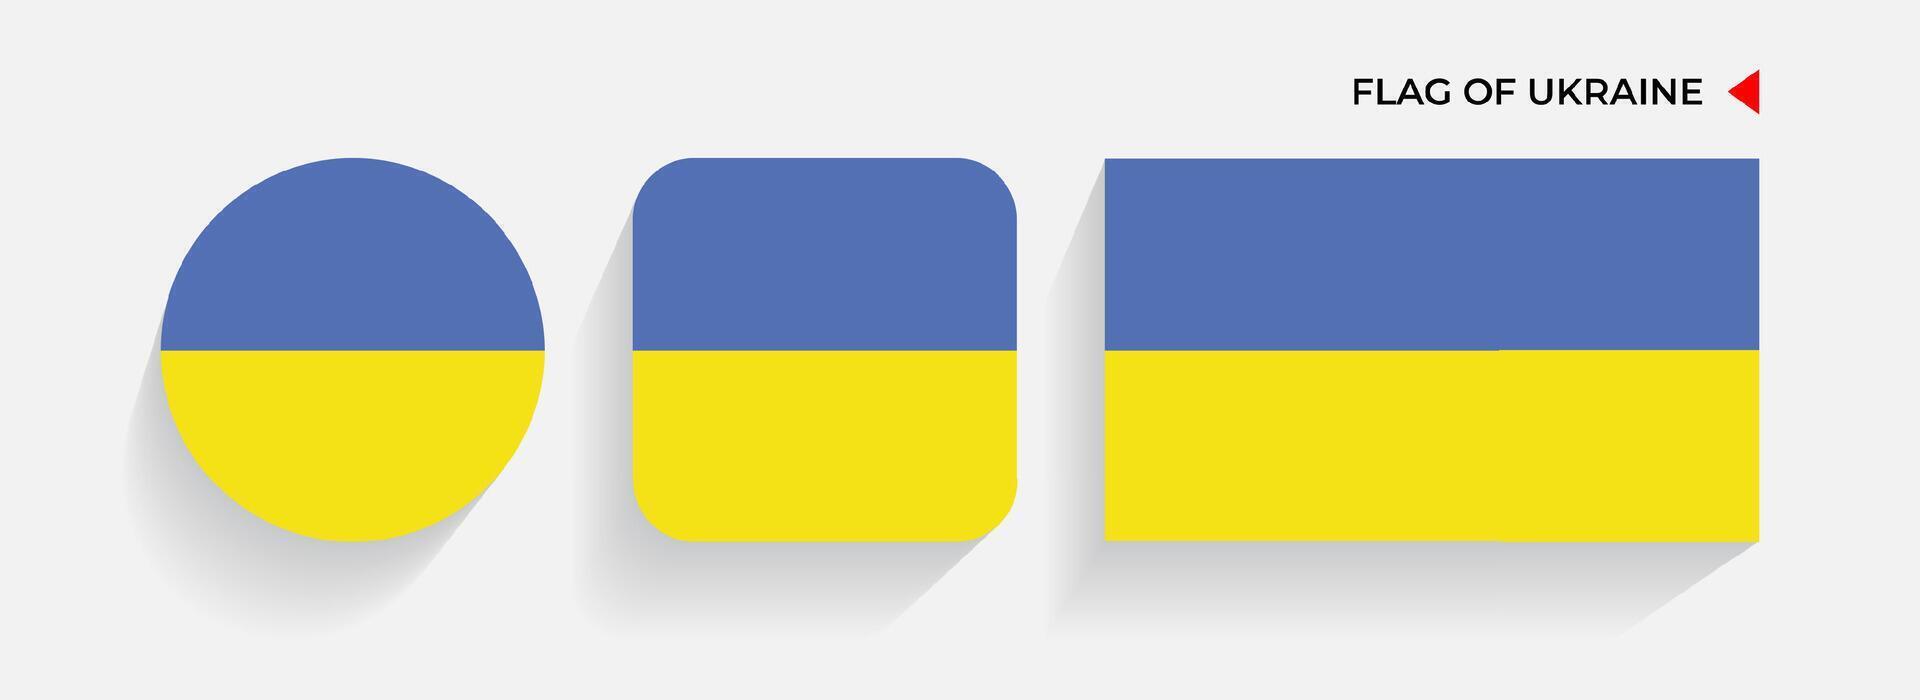 ukraina flaggor anordnad i runda, fyrkant och rektangulär former vektor